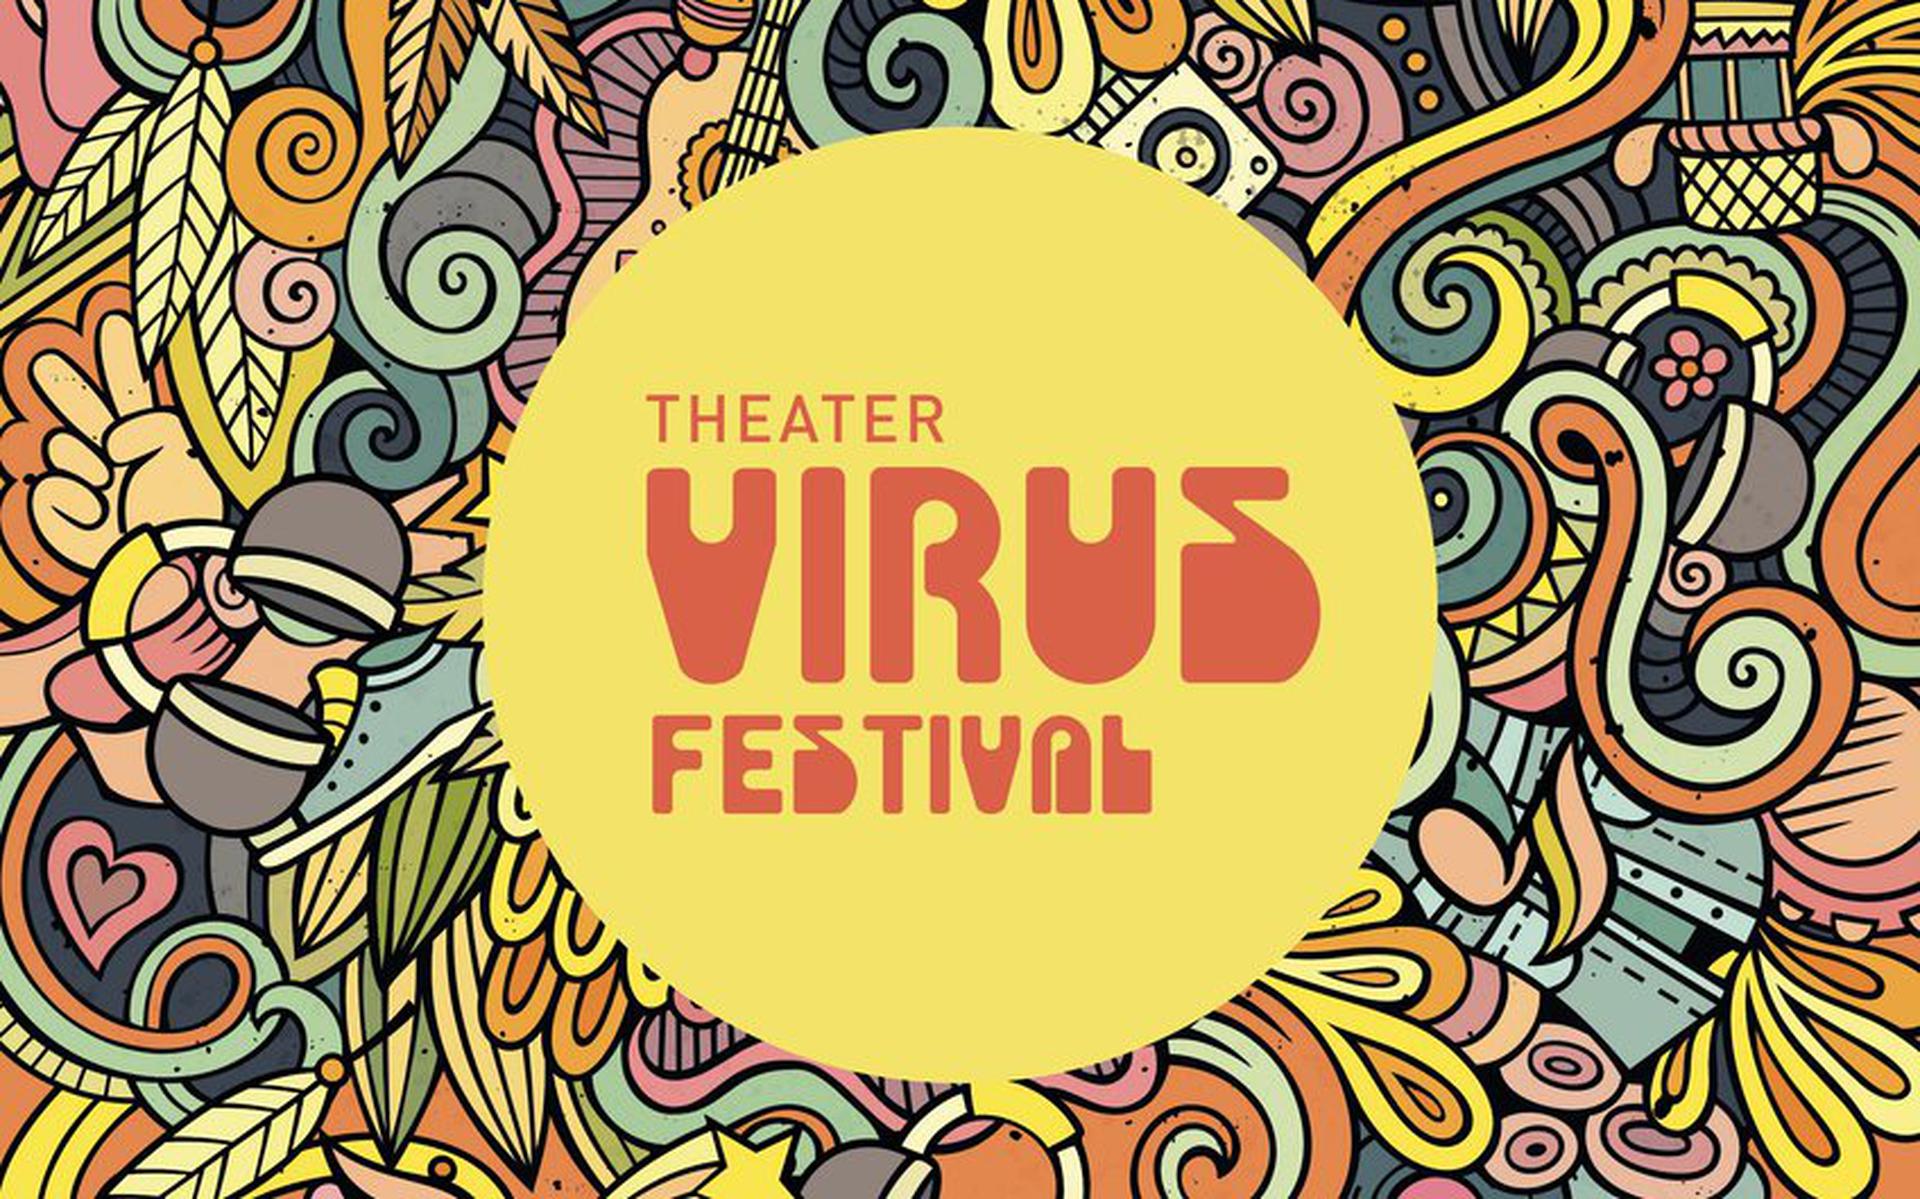 Theater Virus Festival.